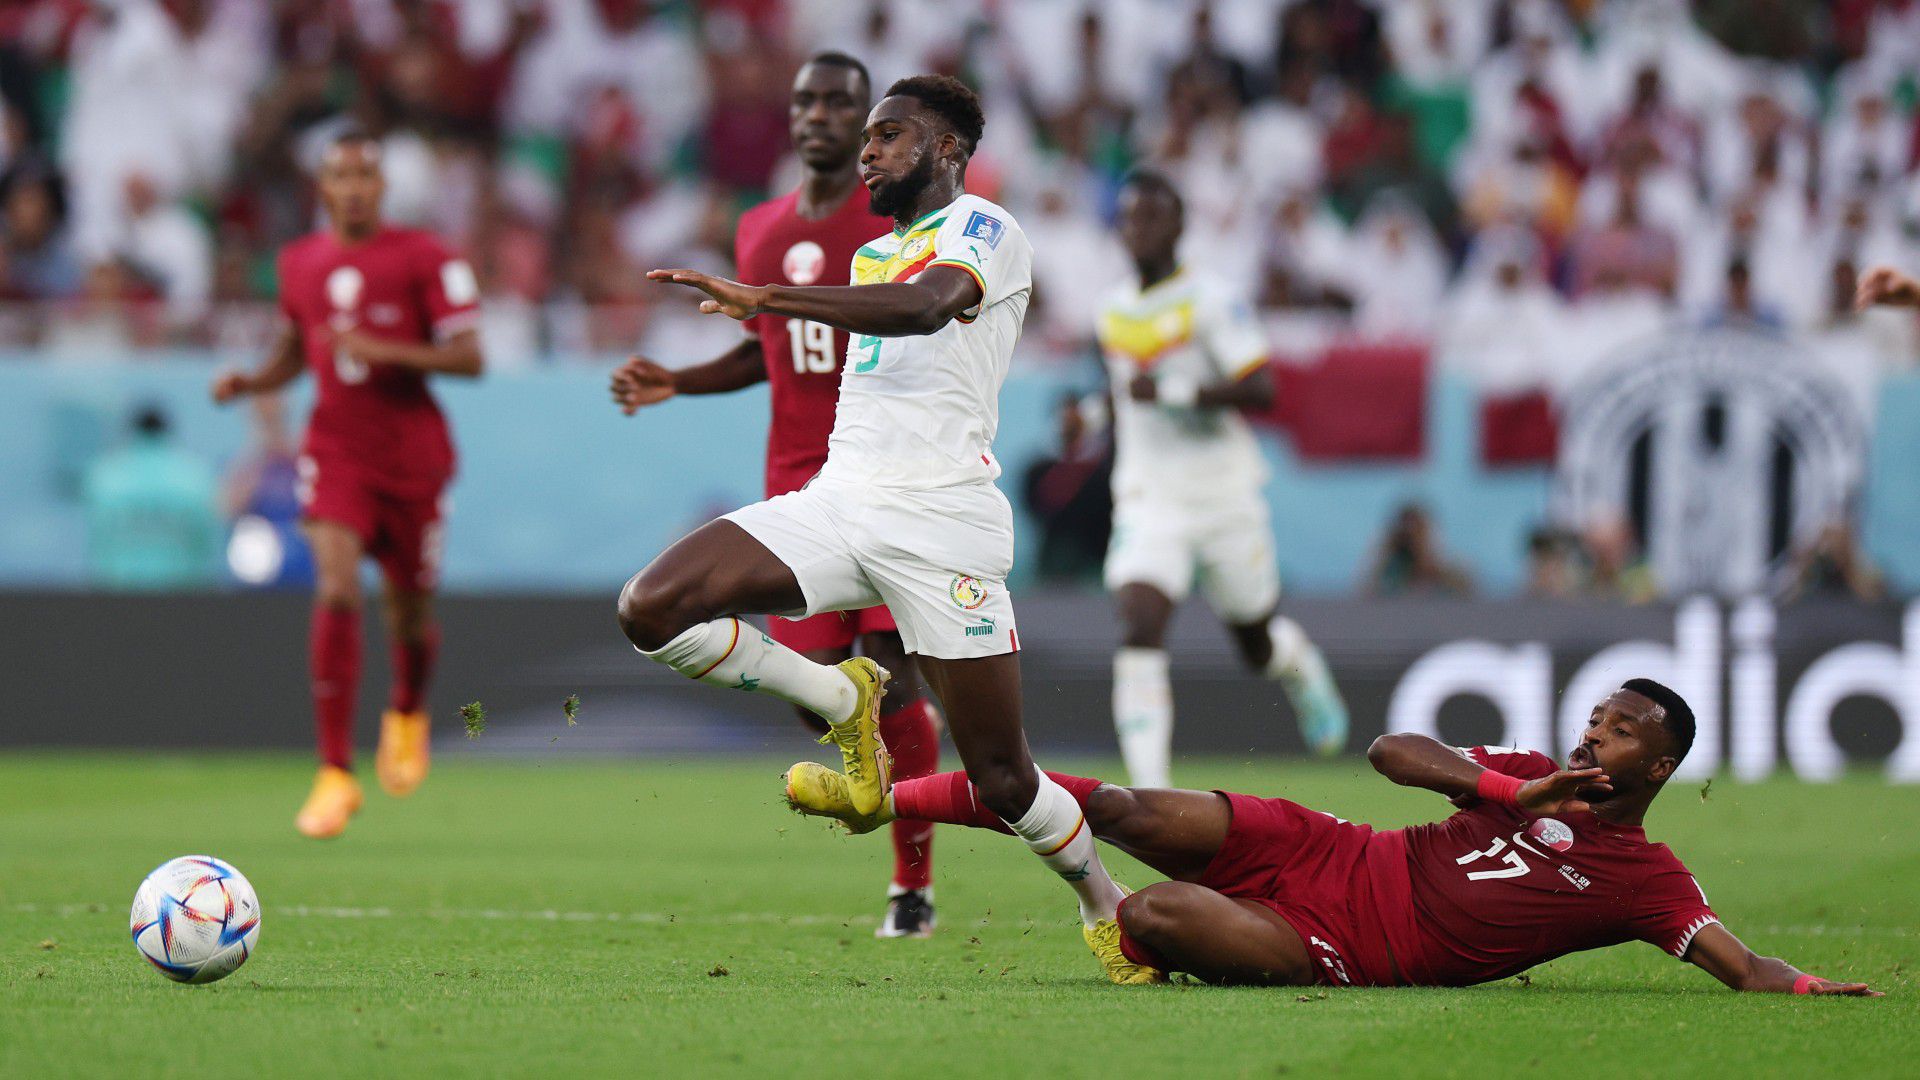 ÉLŐ: Katar nem hibázhat többet, a Szenegál elleni meccs vesztese könnyen búcsúzó lehet, vezet az afrikai csapat